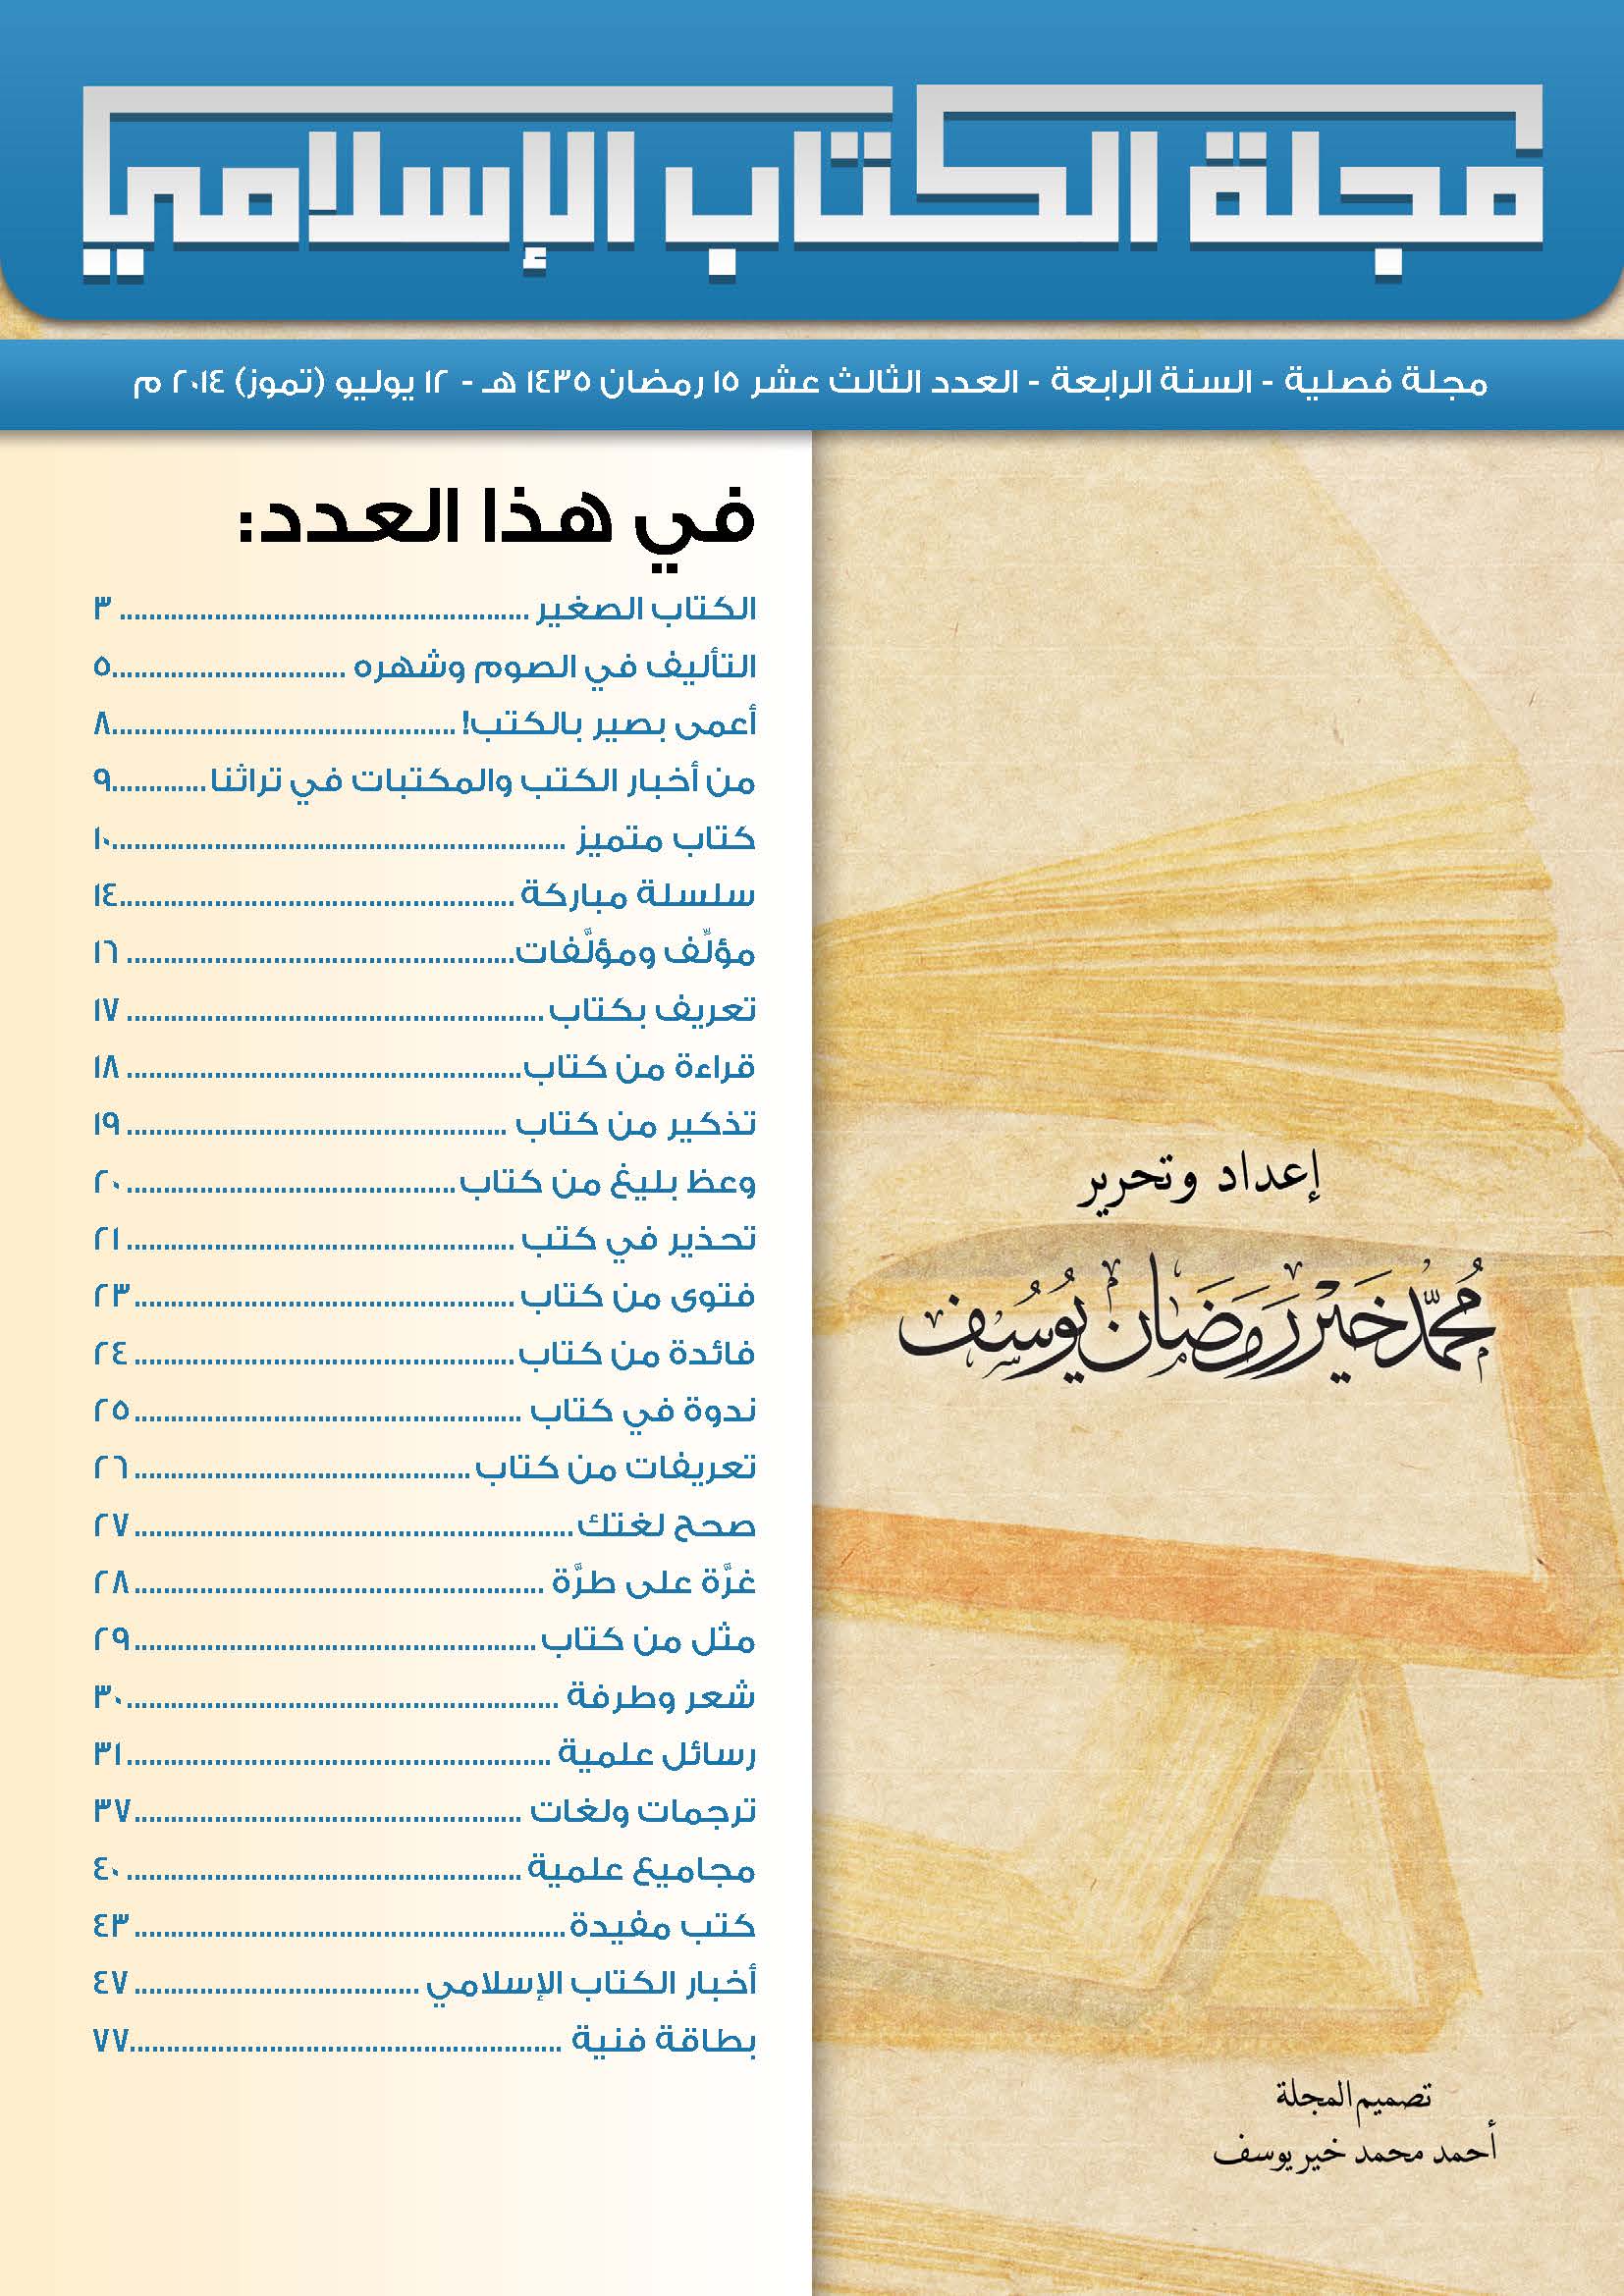 غلاف العدد الثالث عشر من مجلة الكتاب الإسلامي